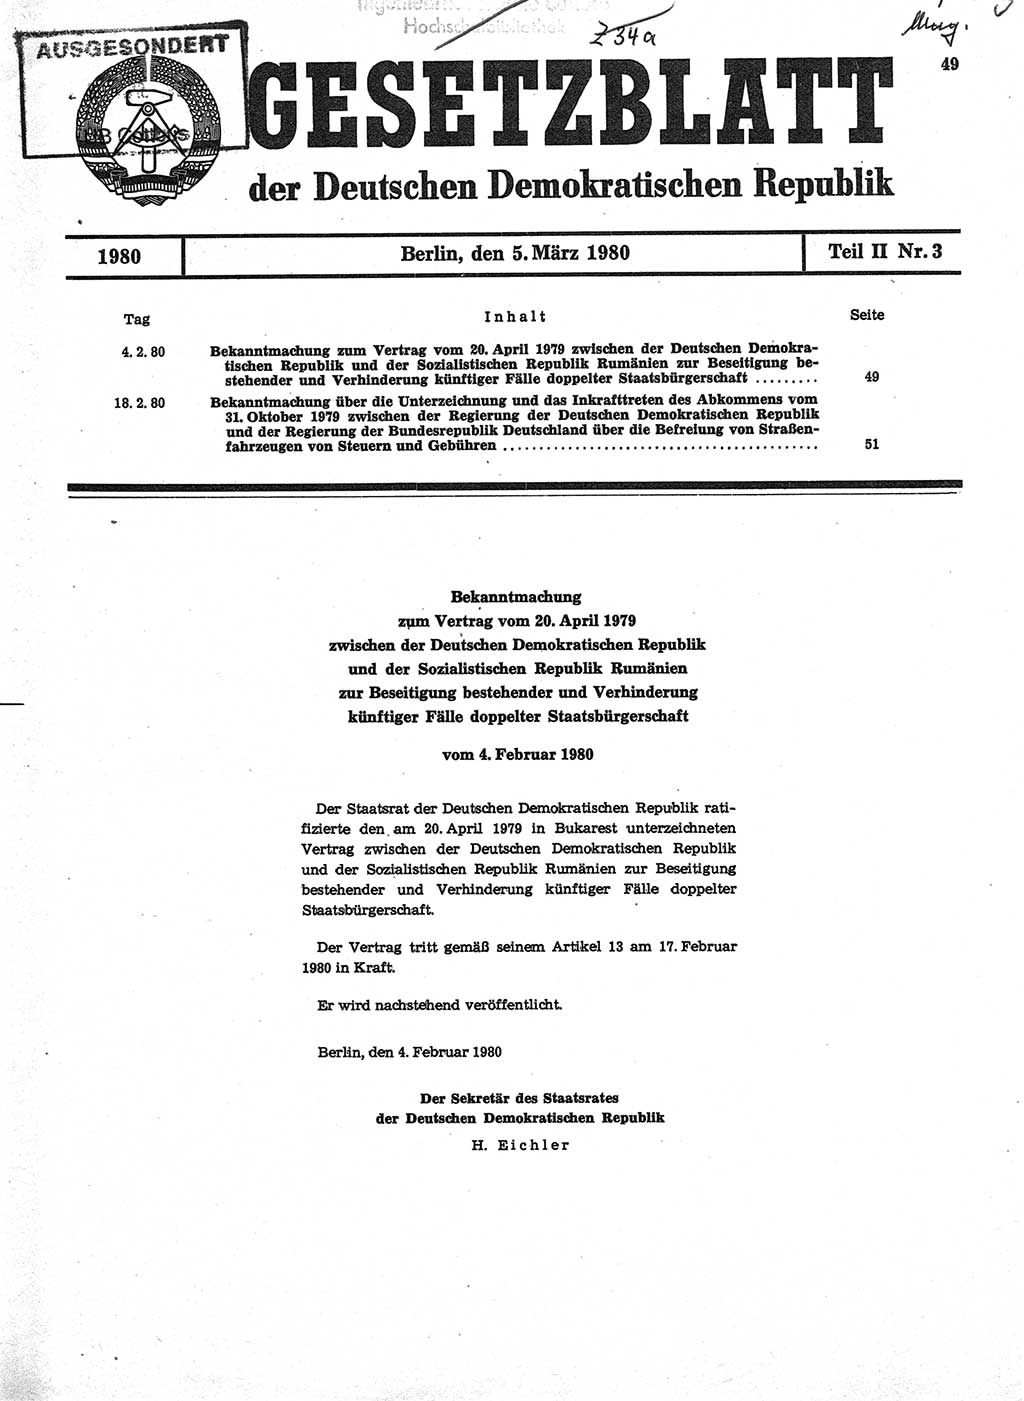 Gesetzblatt (GBl.) der Deutschen Demokratischen Republik (DDR) Teil ⅠⅠ 1980, Seite 49 (GBl. DDR ⅠⅠ 1980, S. 49)